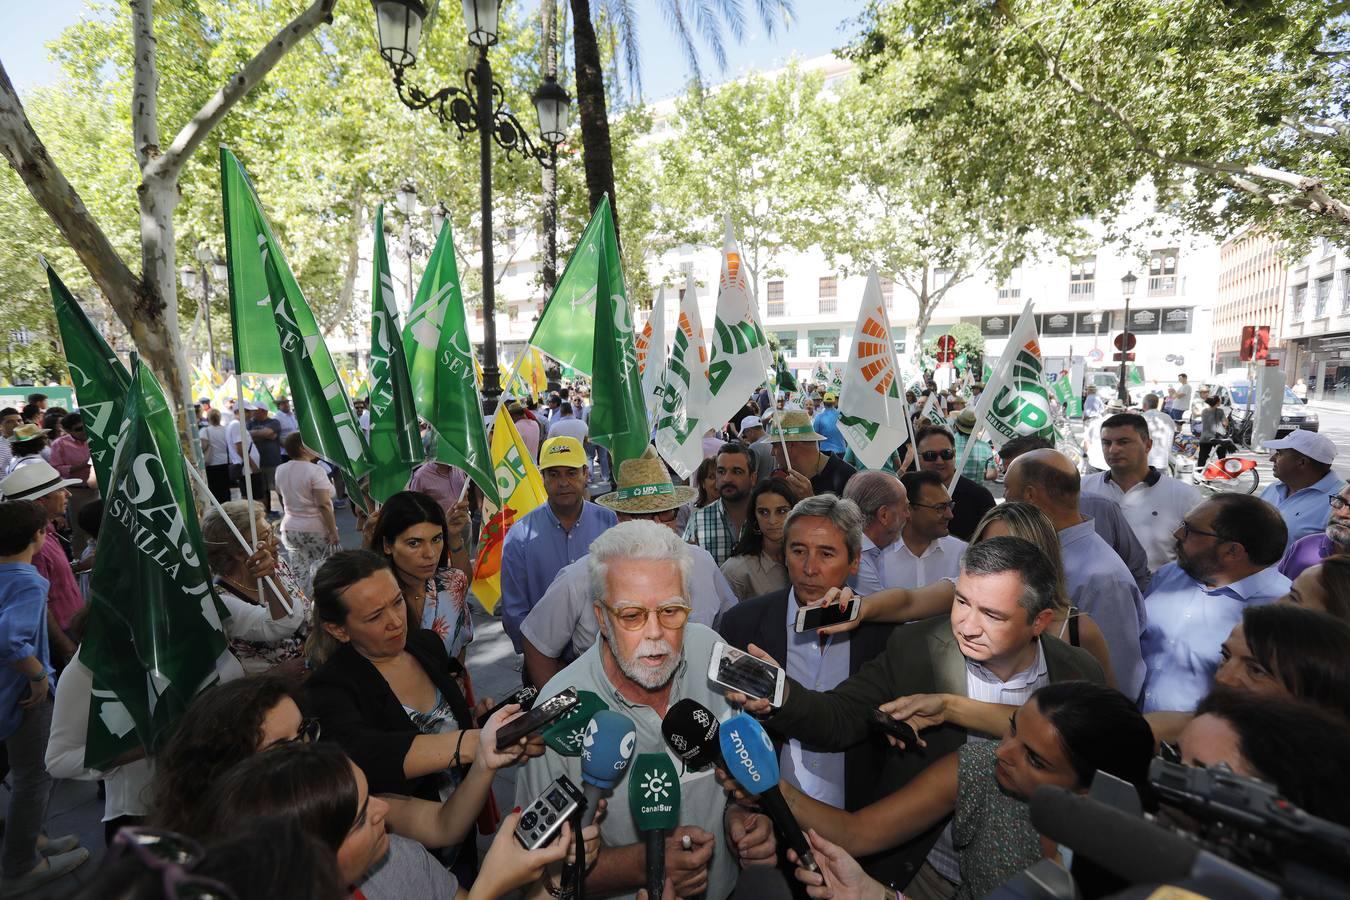 Protesta de agricultores en el consulado americano de Sevilla